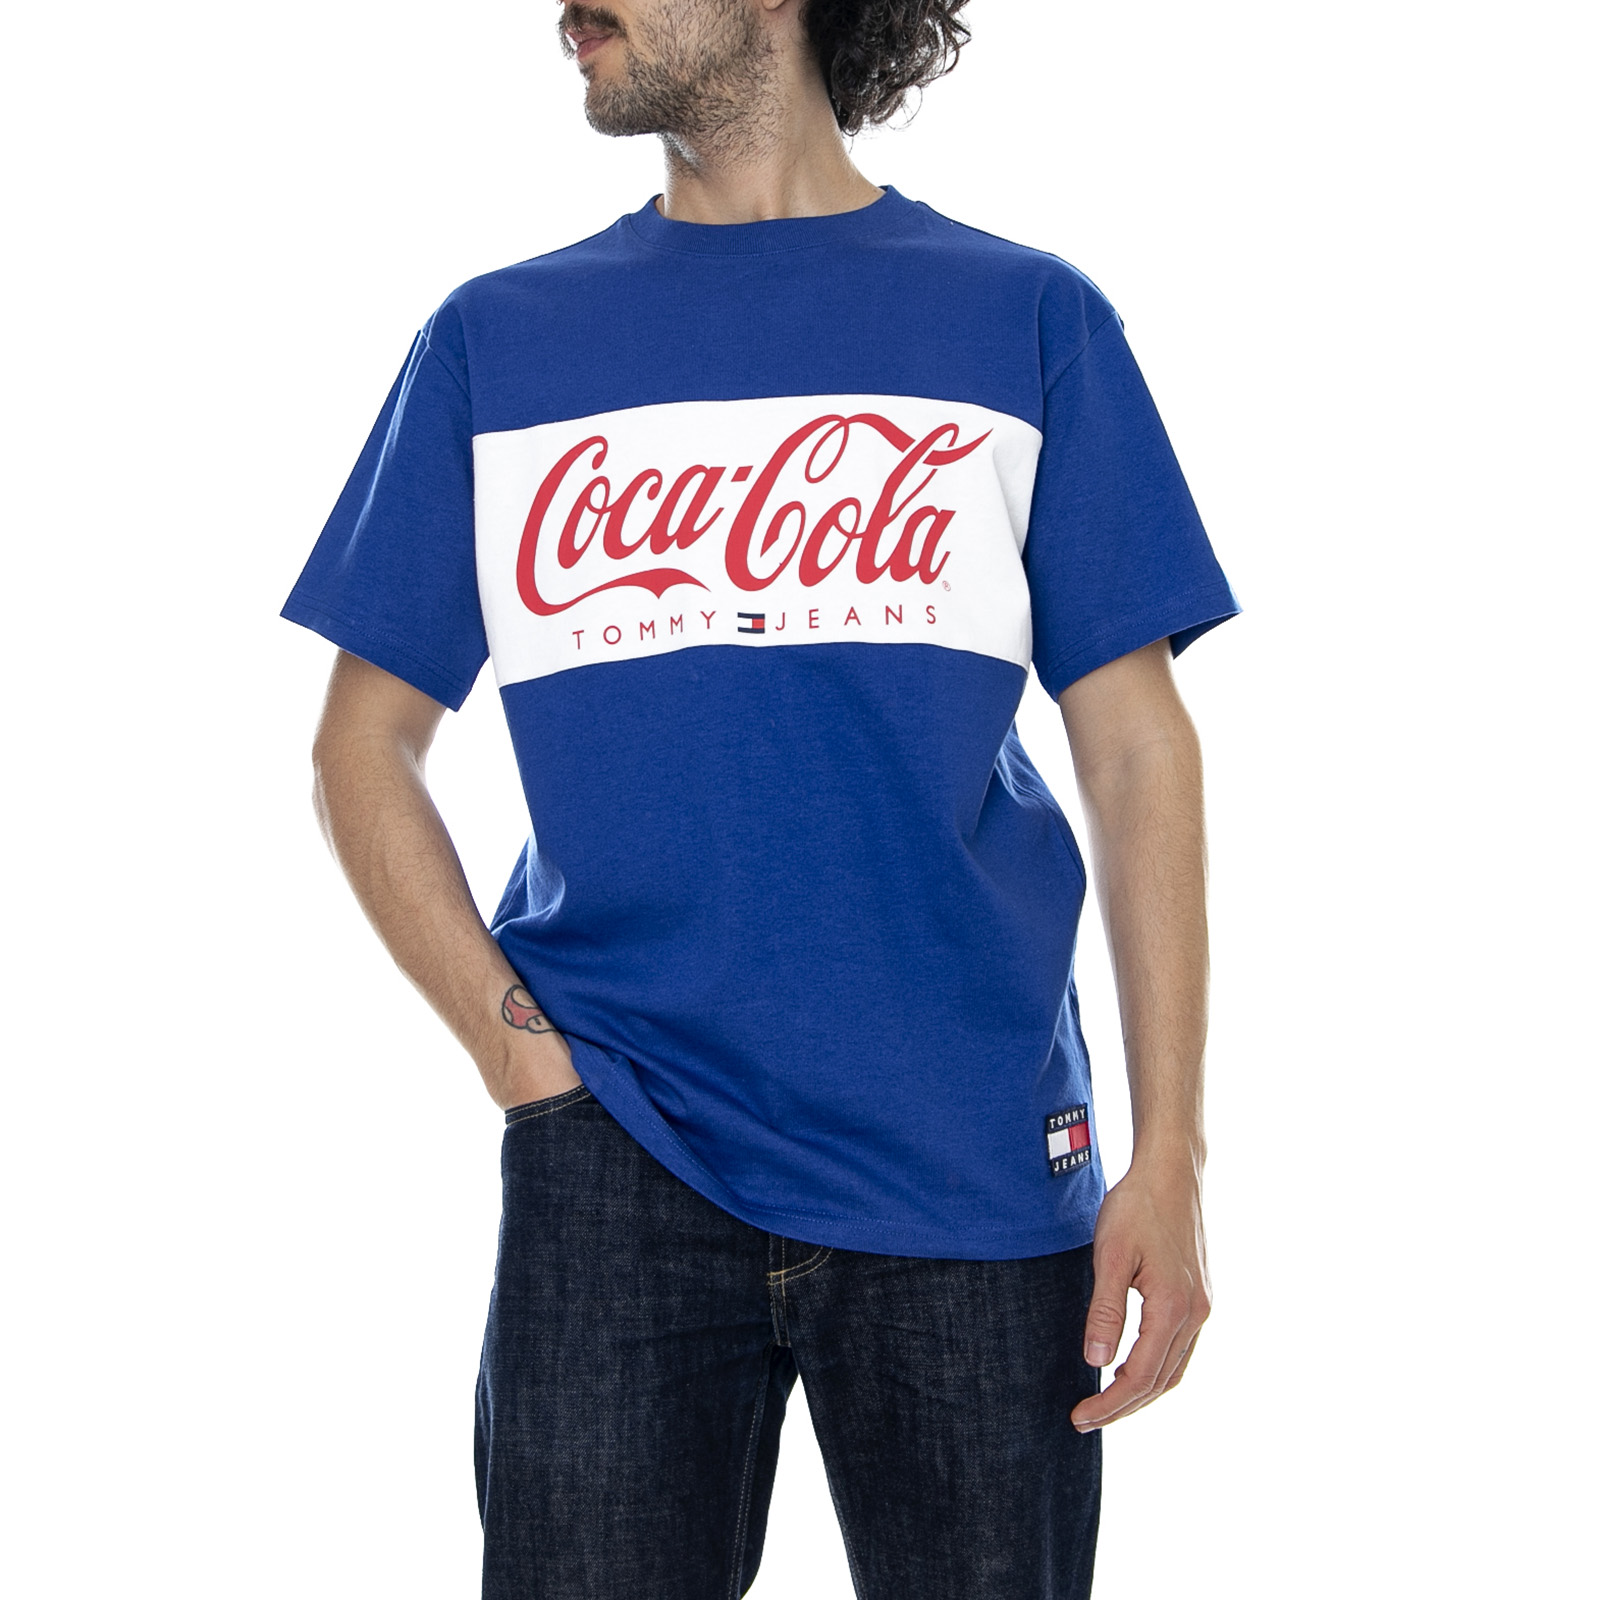 tommy hilfiger x coca cola t shirt